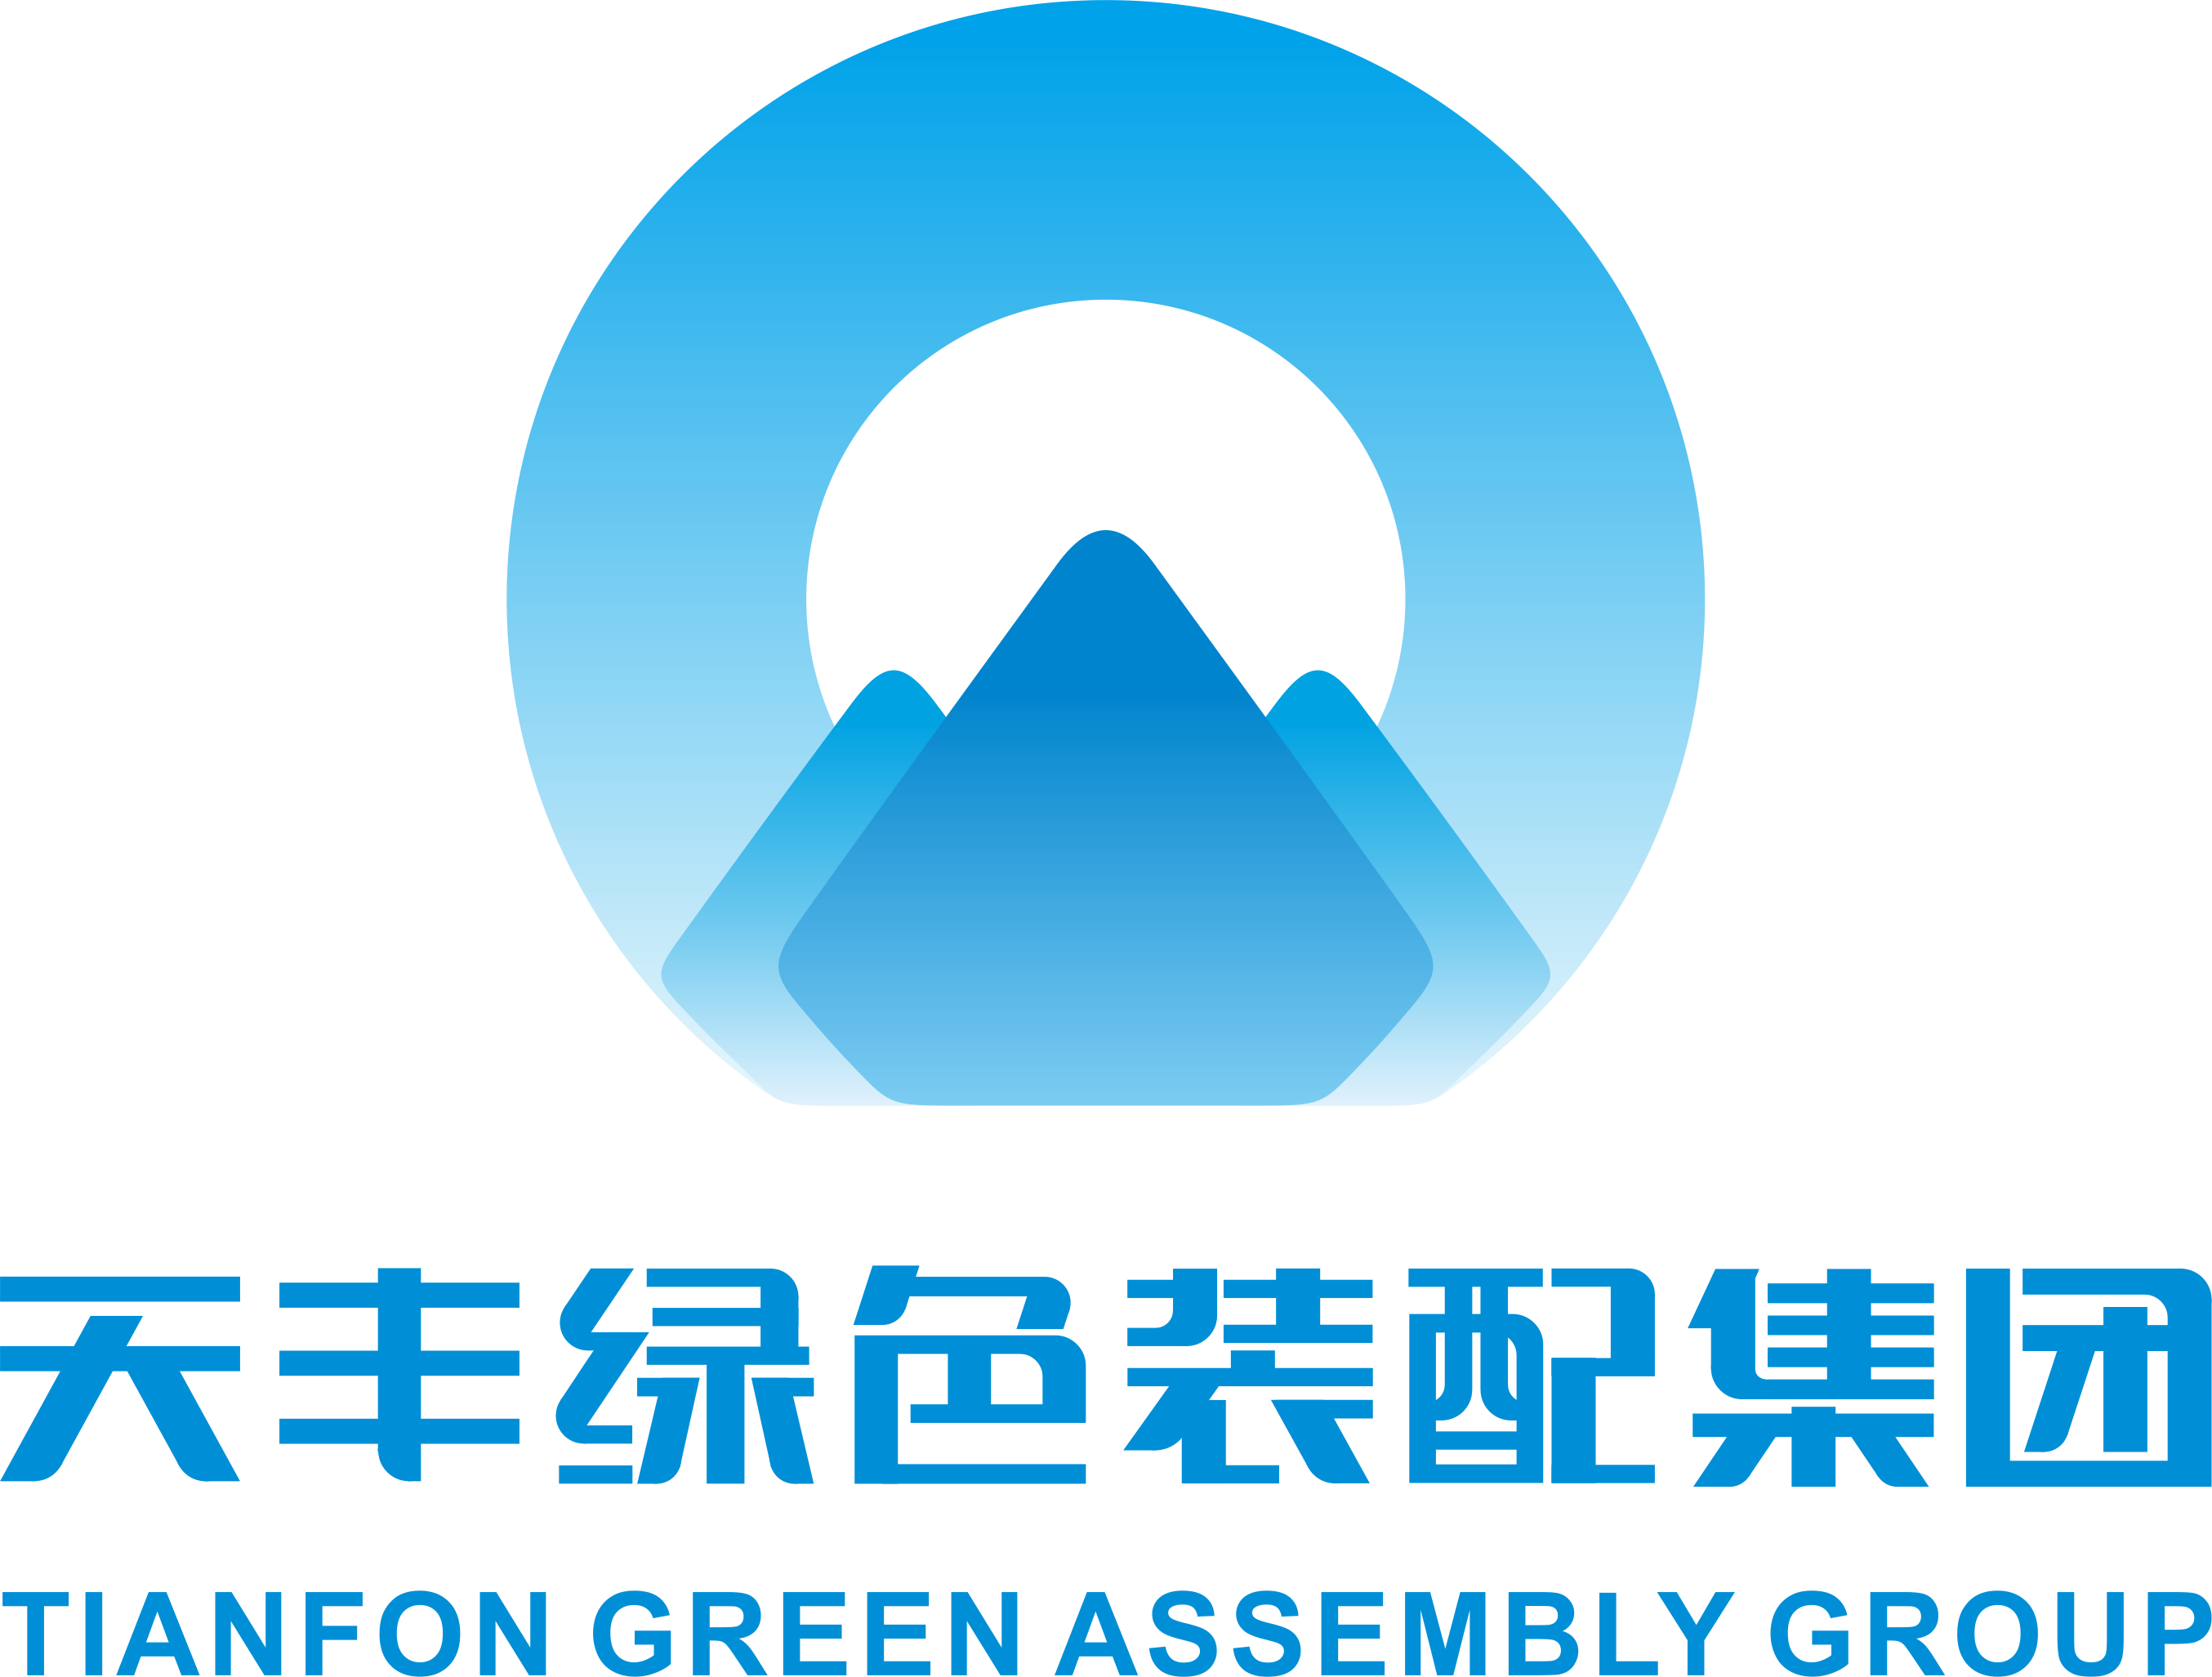 堅守綠色、品質發展，共創美好、智慧未來 ——中國金屬圍護系統行業倡議書